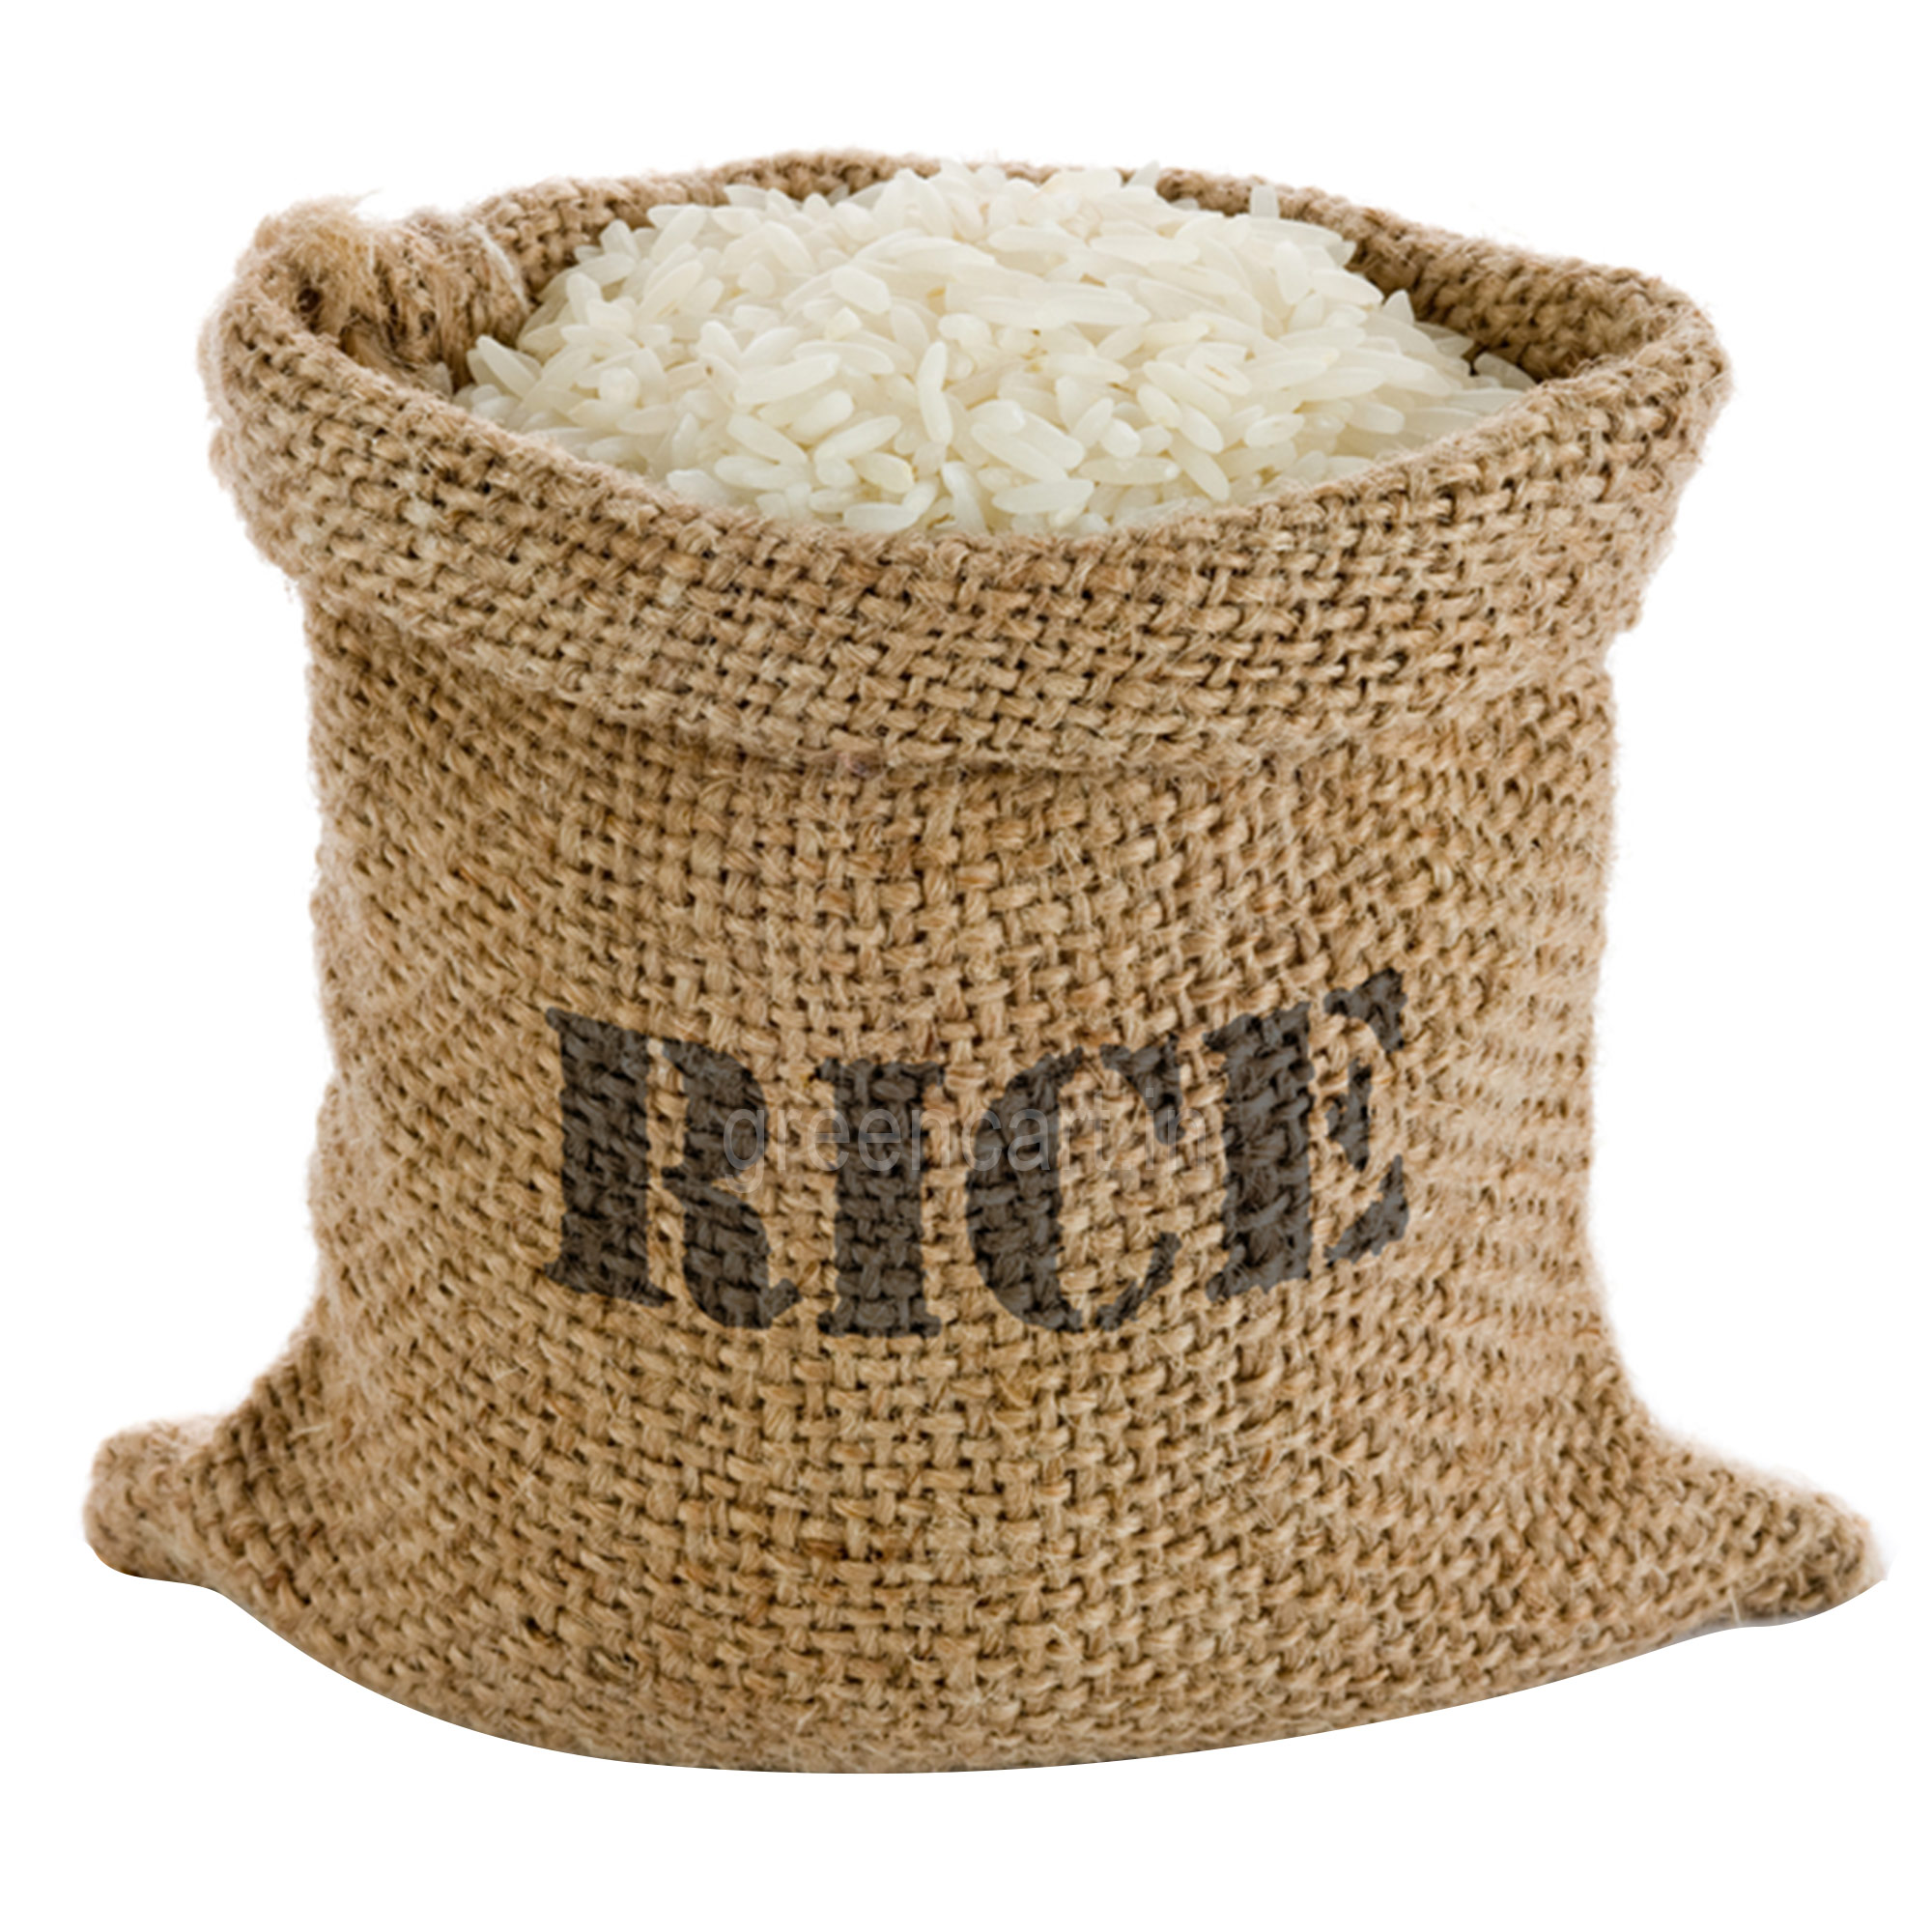 A sack of rice, Rice, Sack, D